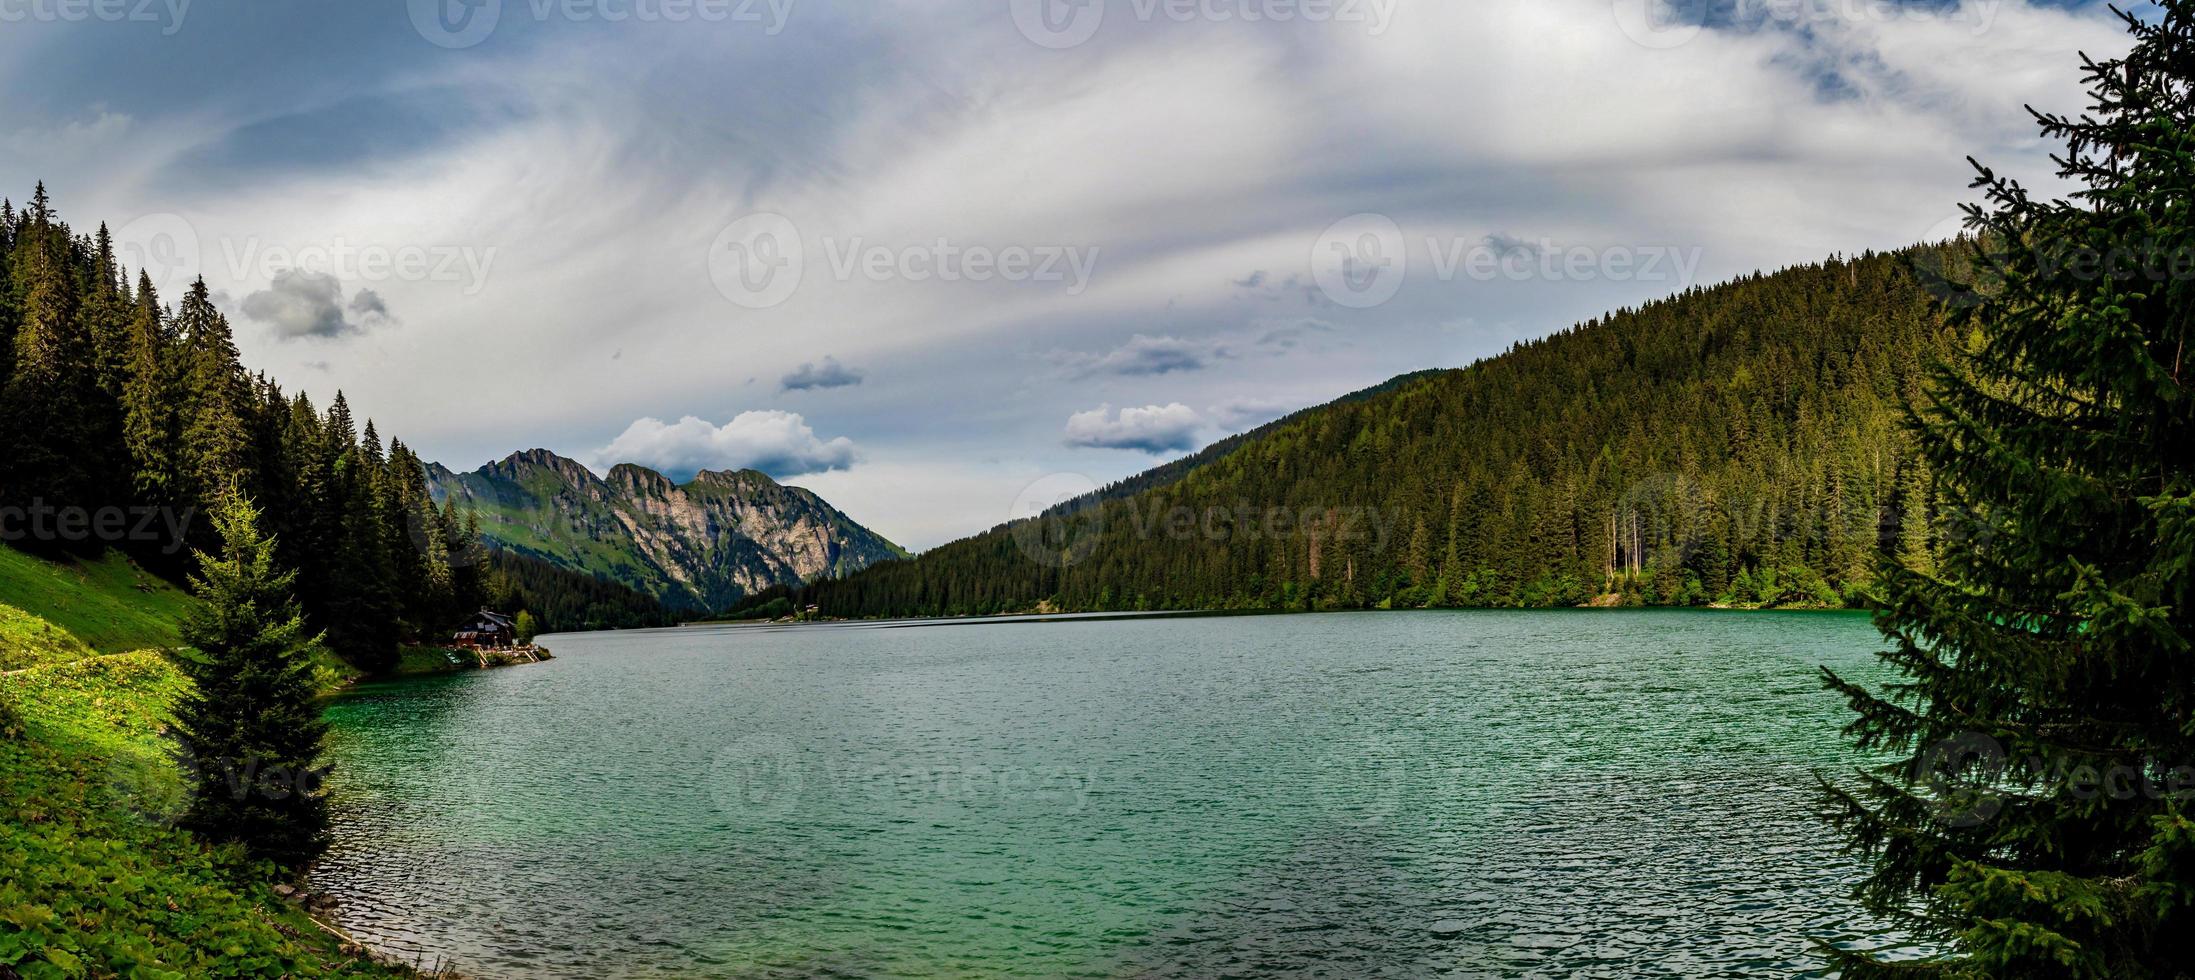 perdu dans les montagnes suisses, le lac d'arnsee aux eaux cristallines aux couleurs turquoise et azur. photo